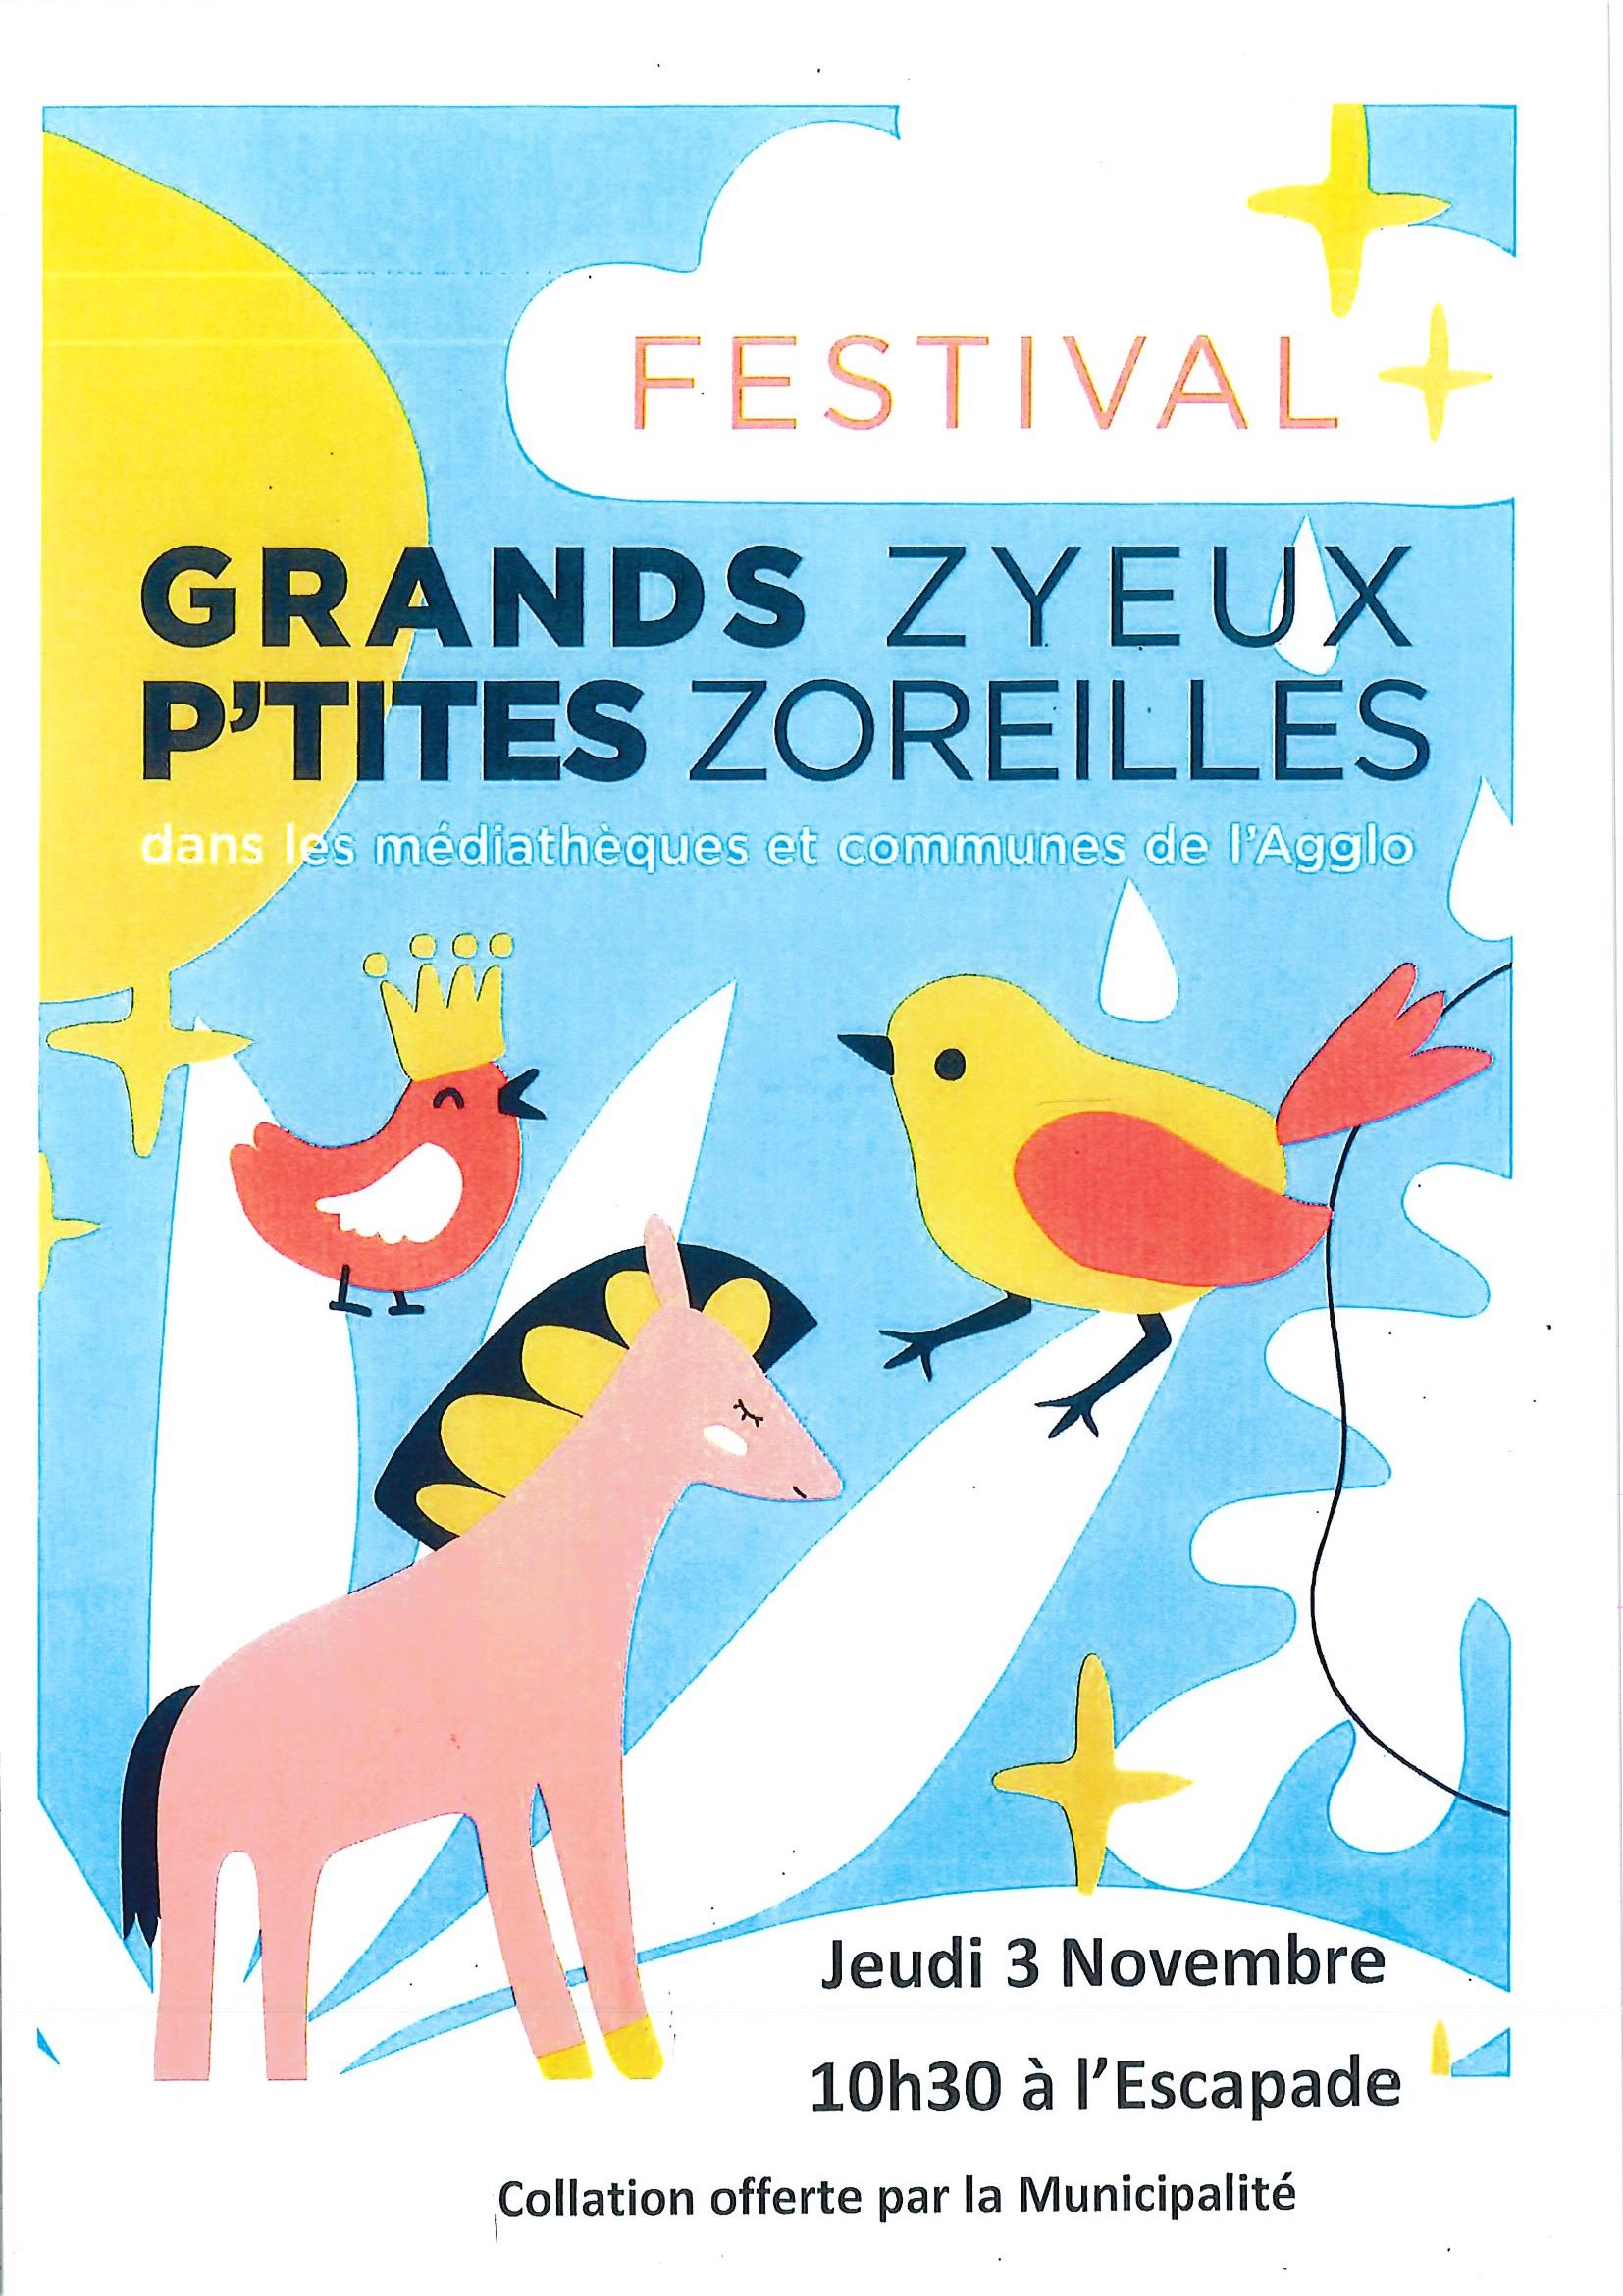 You are currently viewing Festival Grands Zyeux P’tites Zoreilles à l’Escapade le 3 novembre